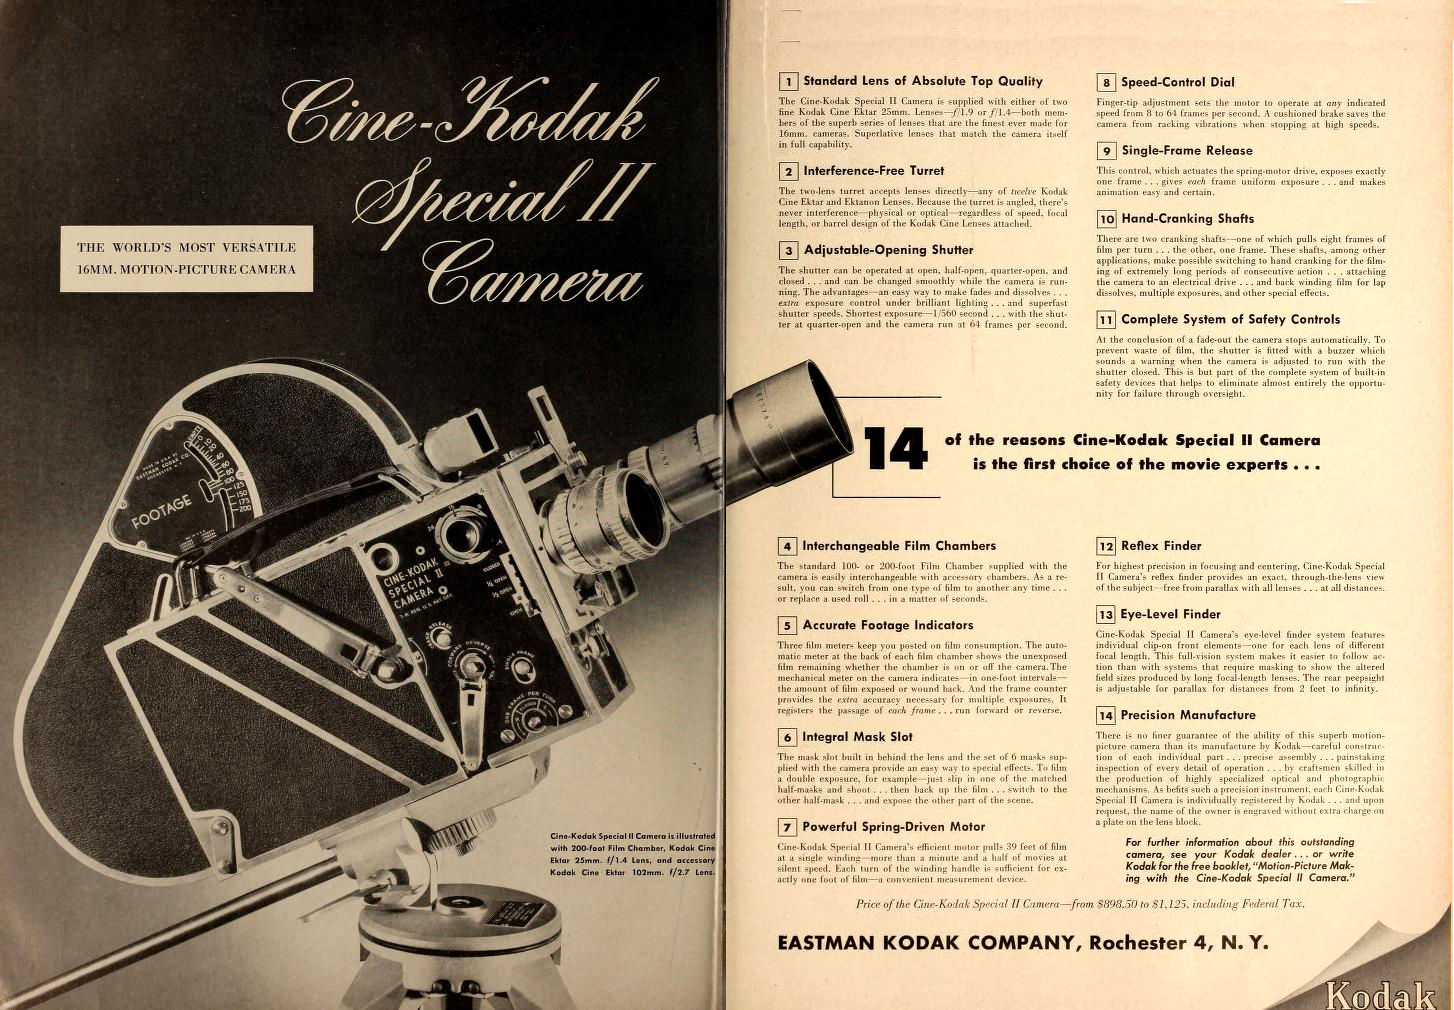 Ciné Kodak "Special" - Movie Maker Nov 1949